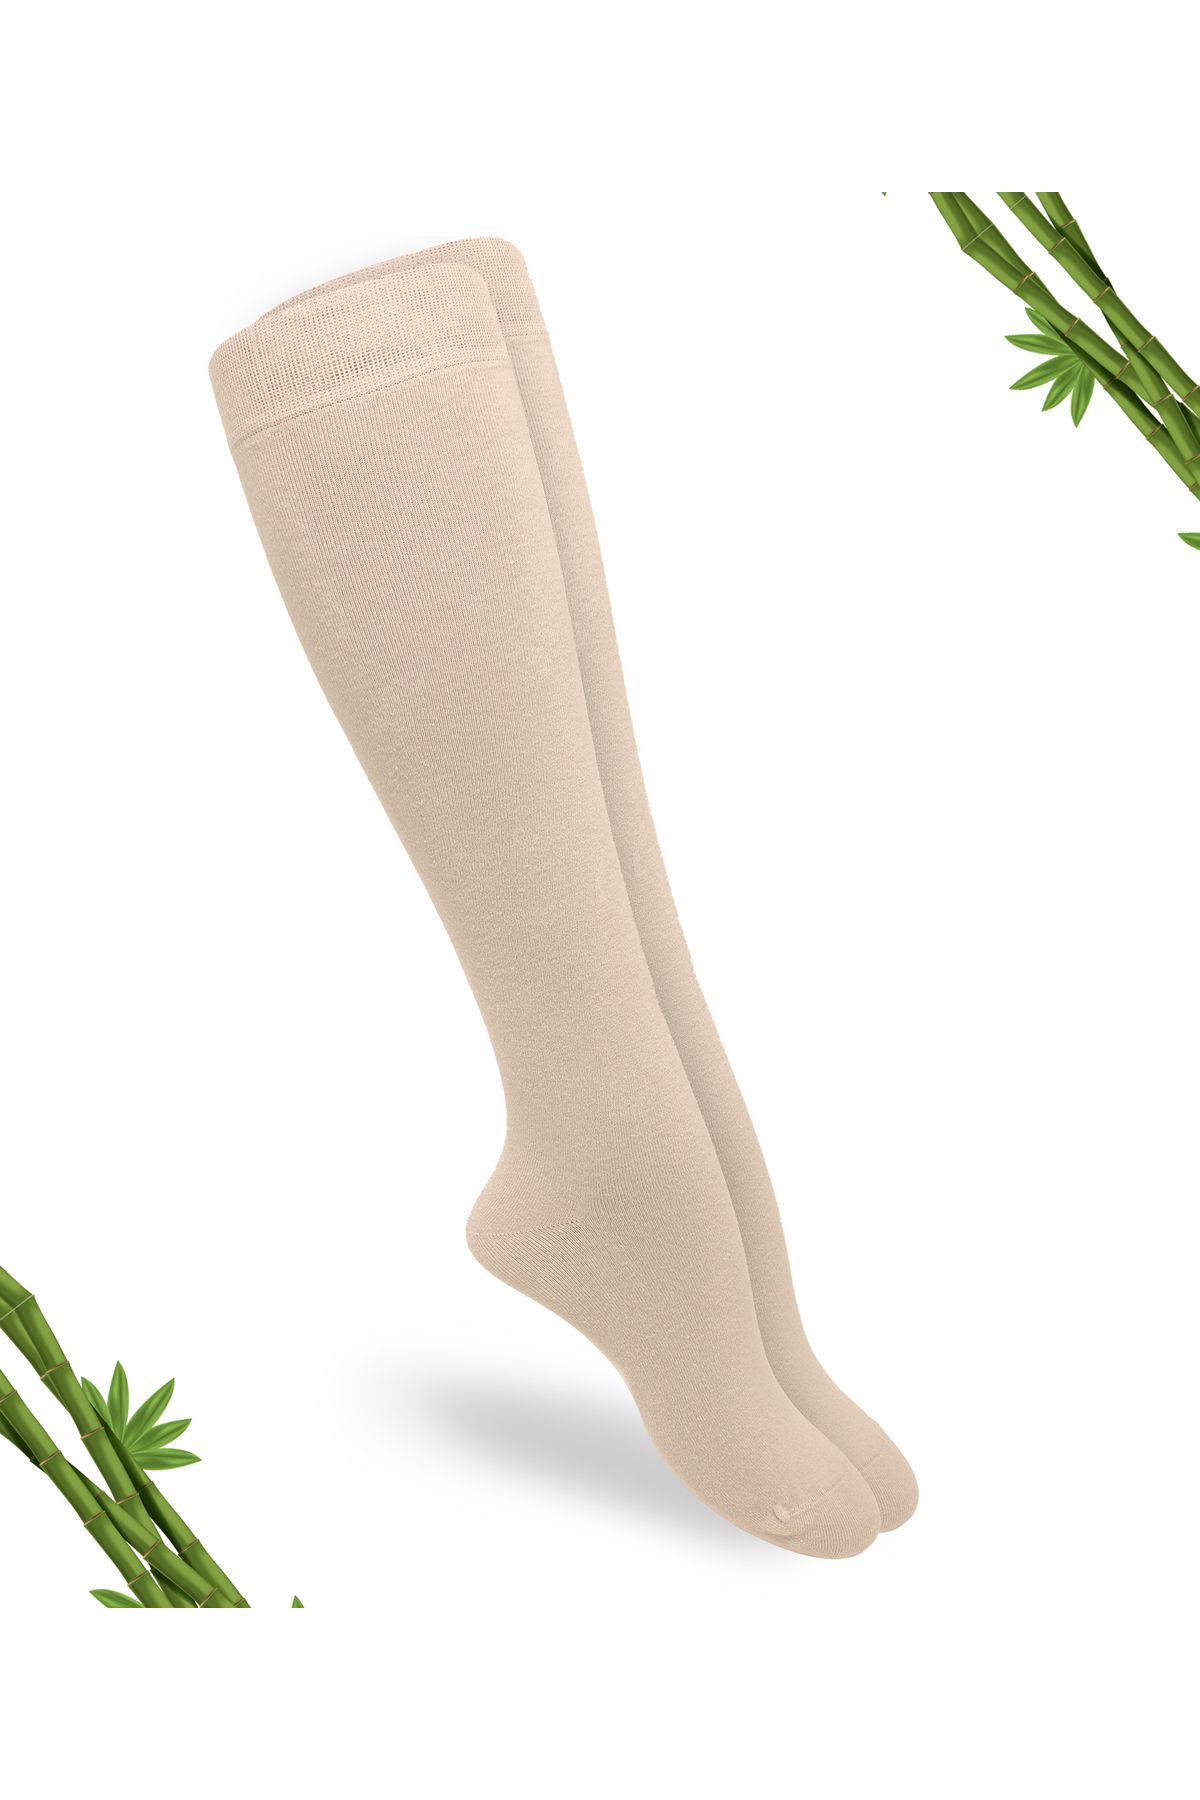 DAYCO Premium Dikişsiz (TEN RENGİ) Bej Rengi Kadın Bambu Dizaltı Çorap - 392-bej-35-38 - (1 ÇİFT)